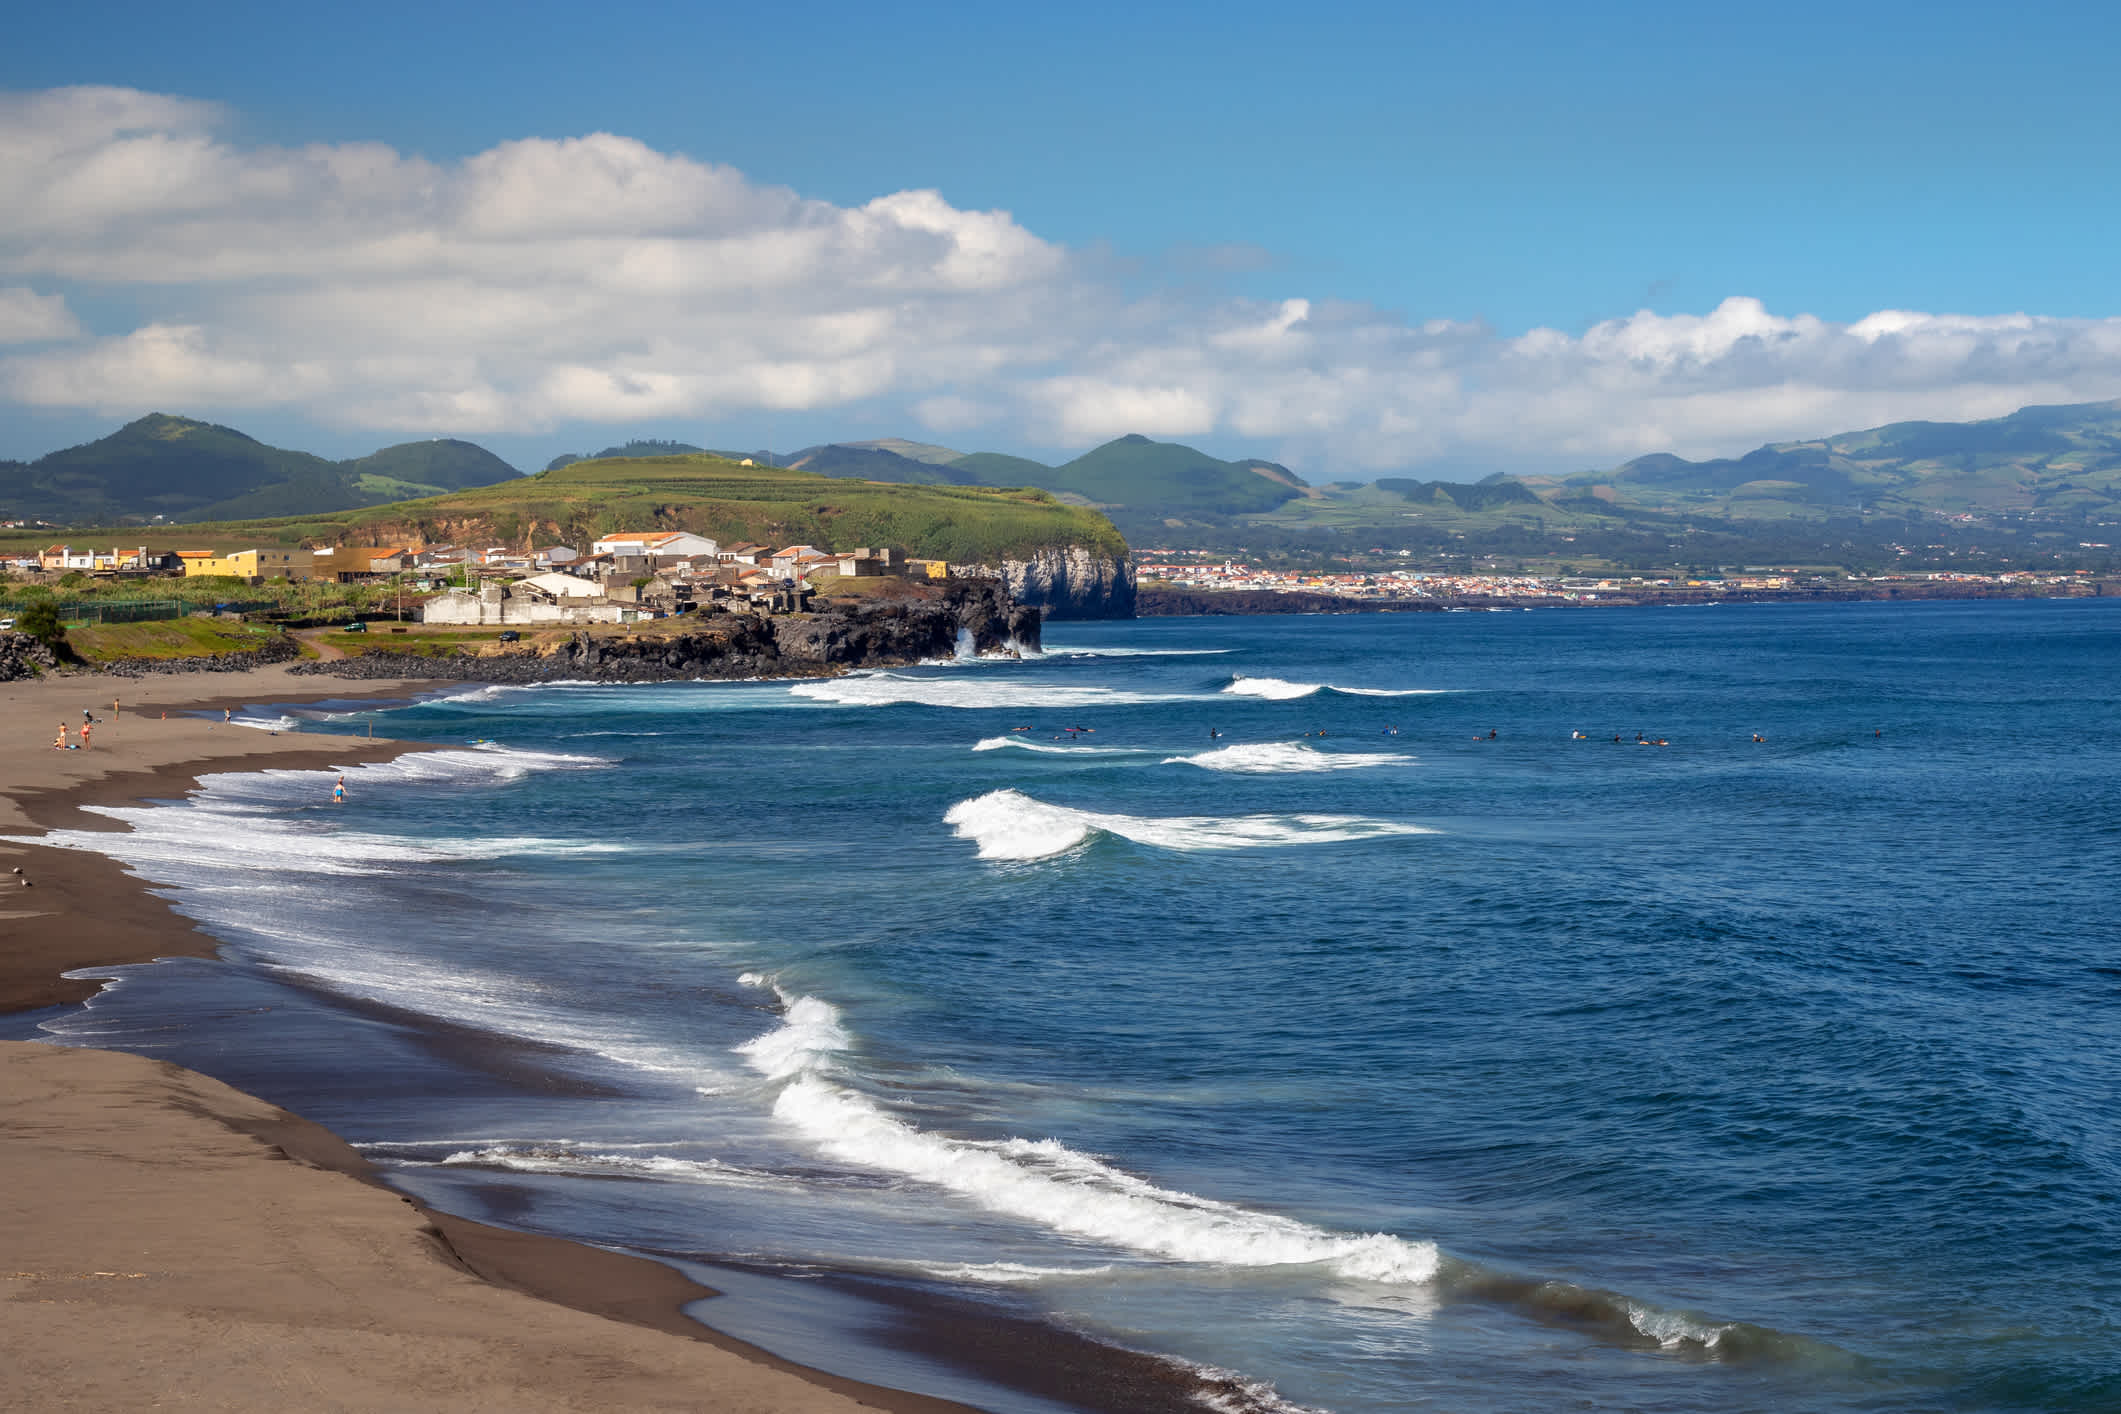 Der Aussicht auf die Atlantikküste und die Stadt Ribeira Grande, Insel Sao Miguel, Azoren, Portugal

